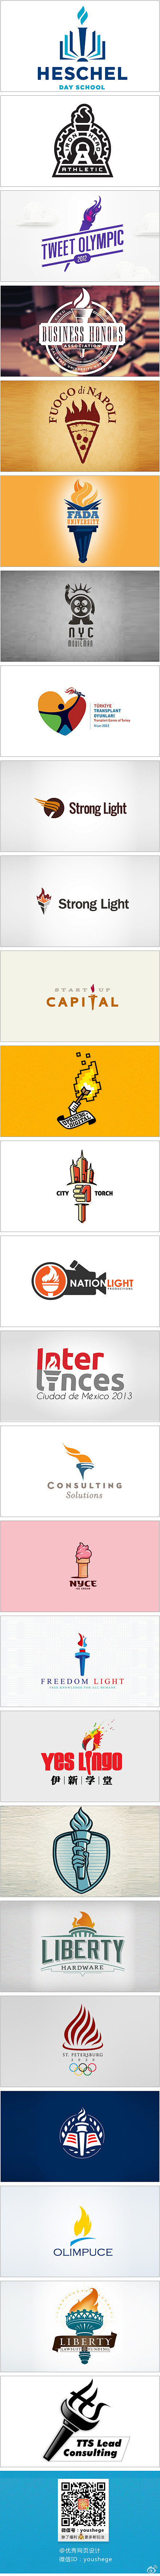 一组火炬元素的Logo设计